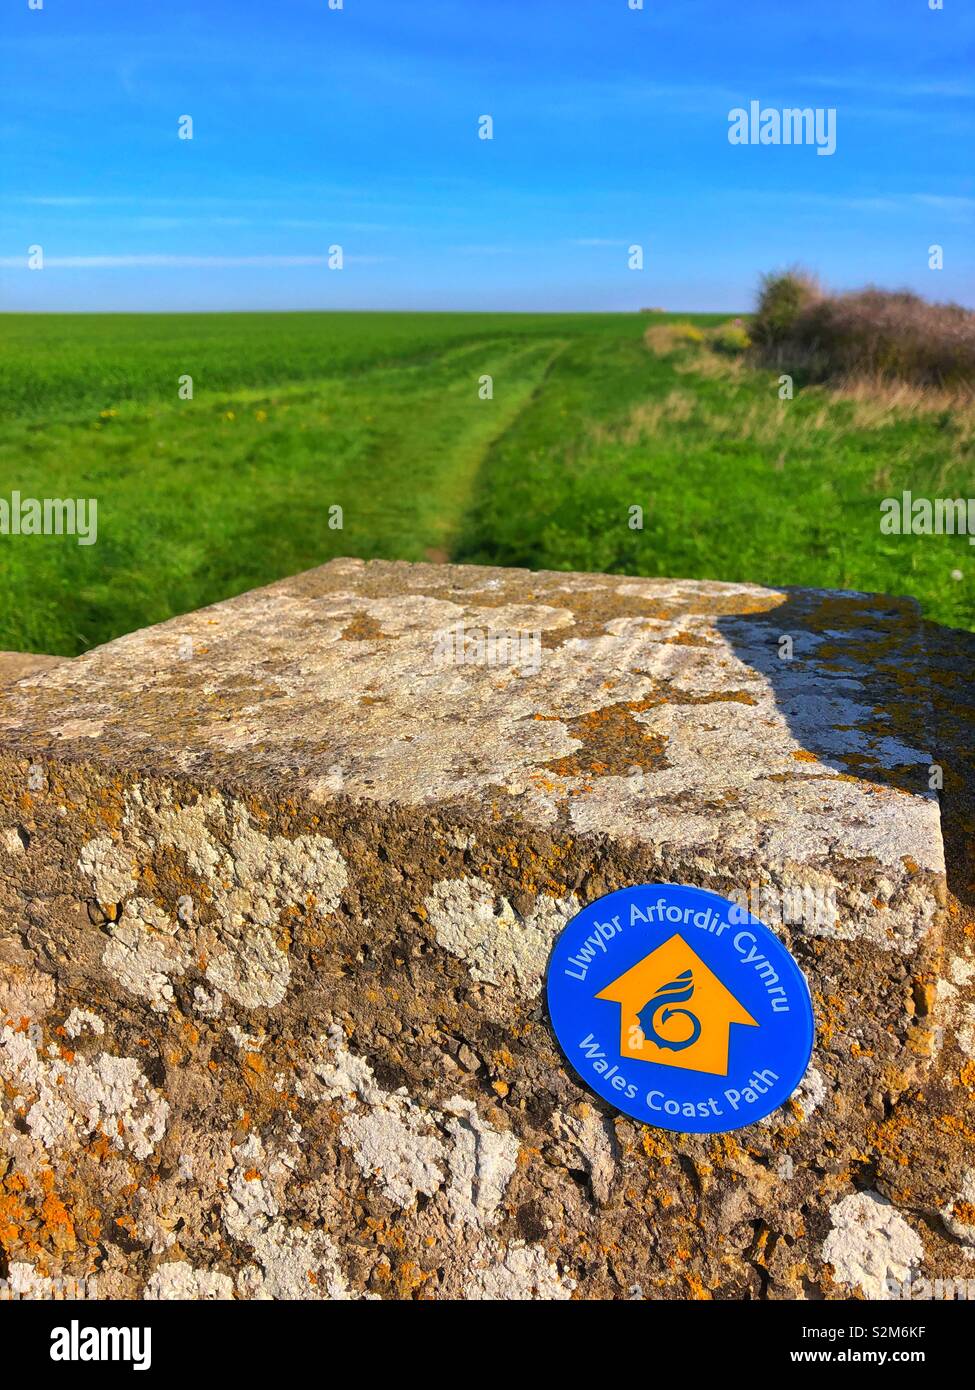 Wales coast path signe sur un mur le long de la côte du Glamorgan, Pays de Galles du Sud. Banque D'Images